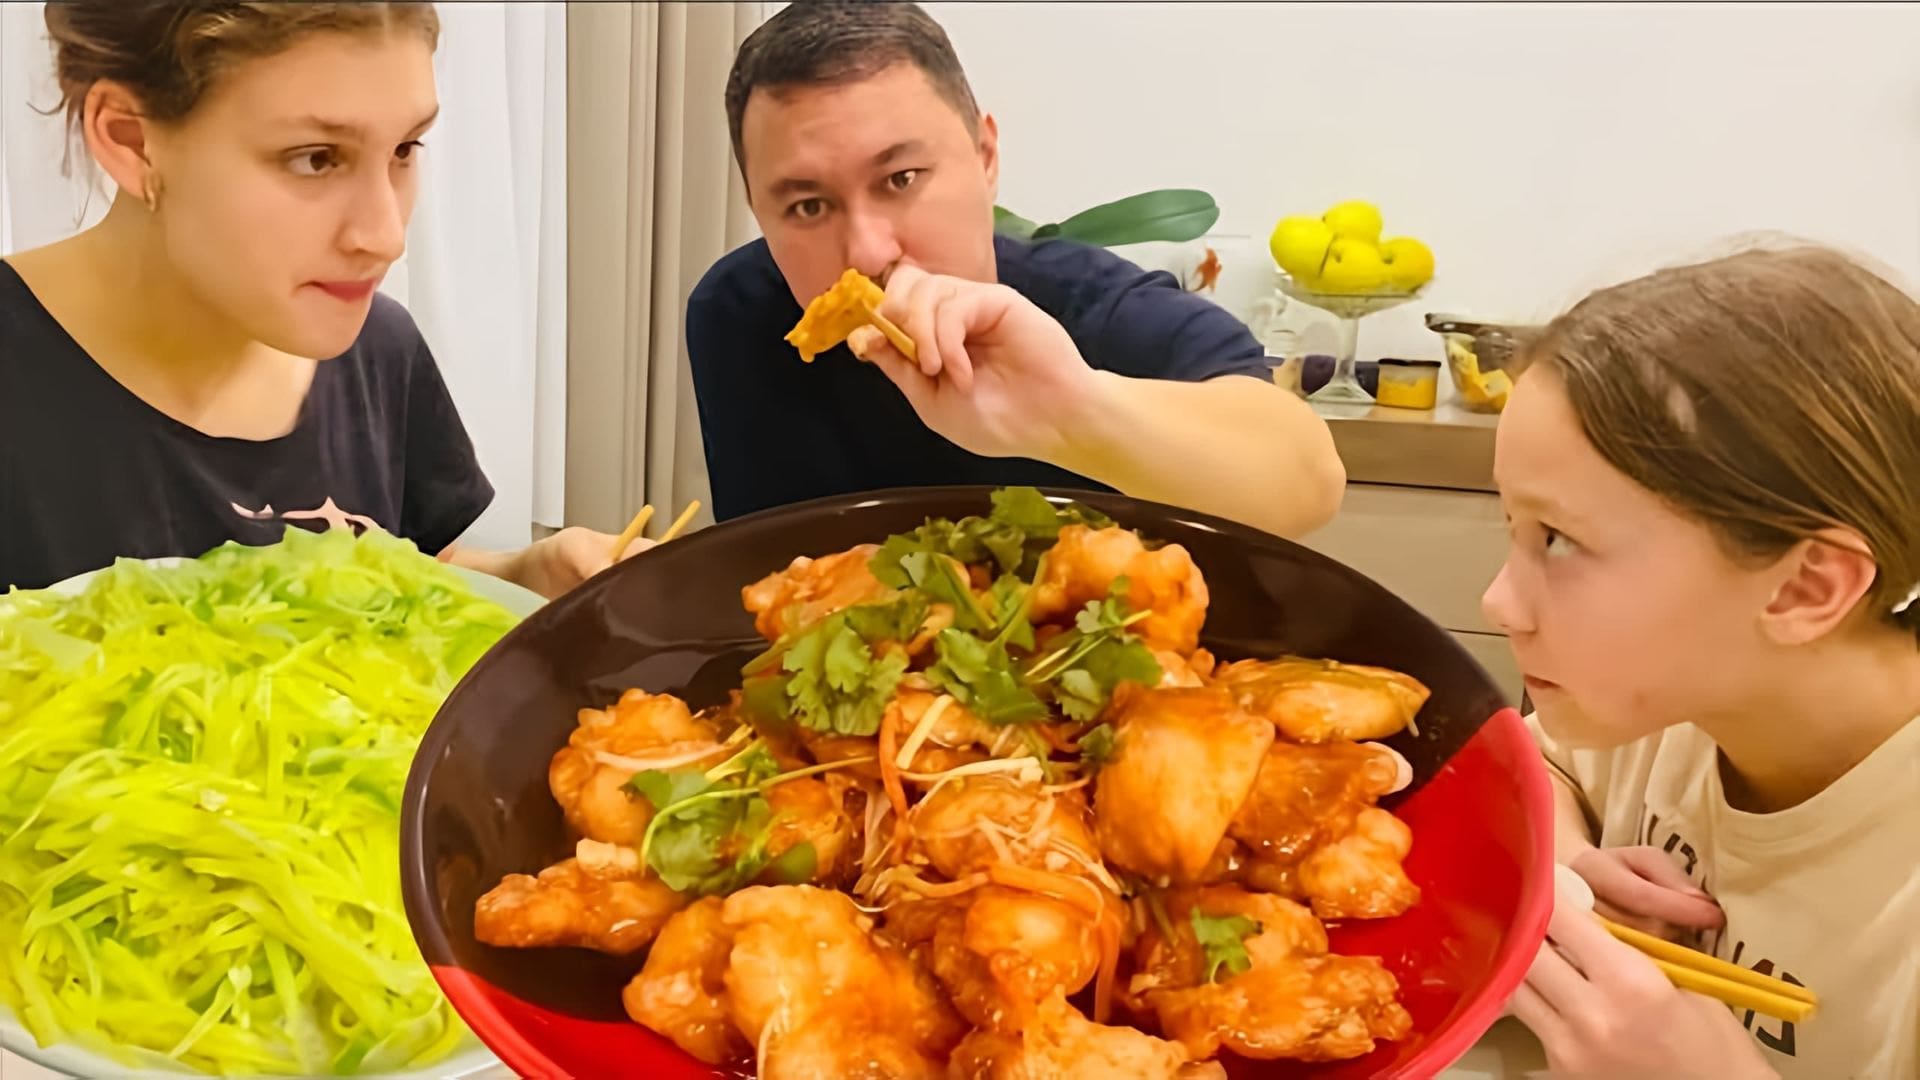 В данном видео демонстрируется рецепт приготовления мяса ГаБаДжоу, которое является популярным блюдом китайской кухни